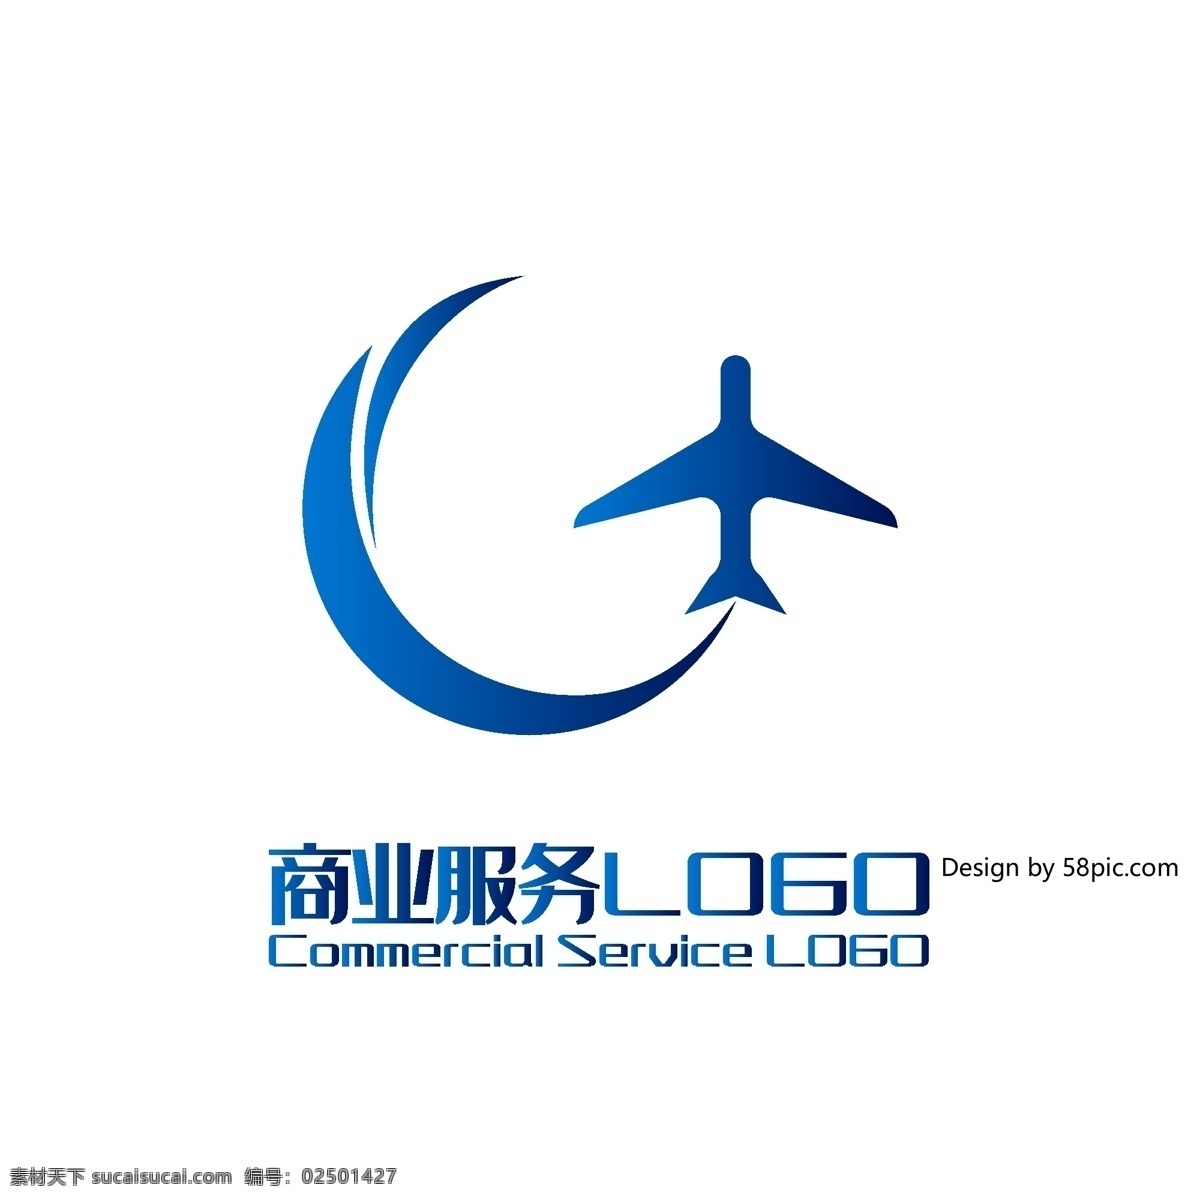 原创 创意 简约 g 字 飞机 商旅 商业服务 logo 可商用 字体设计 商业 服务 标志